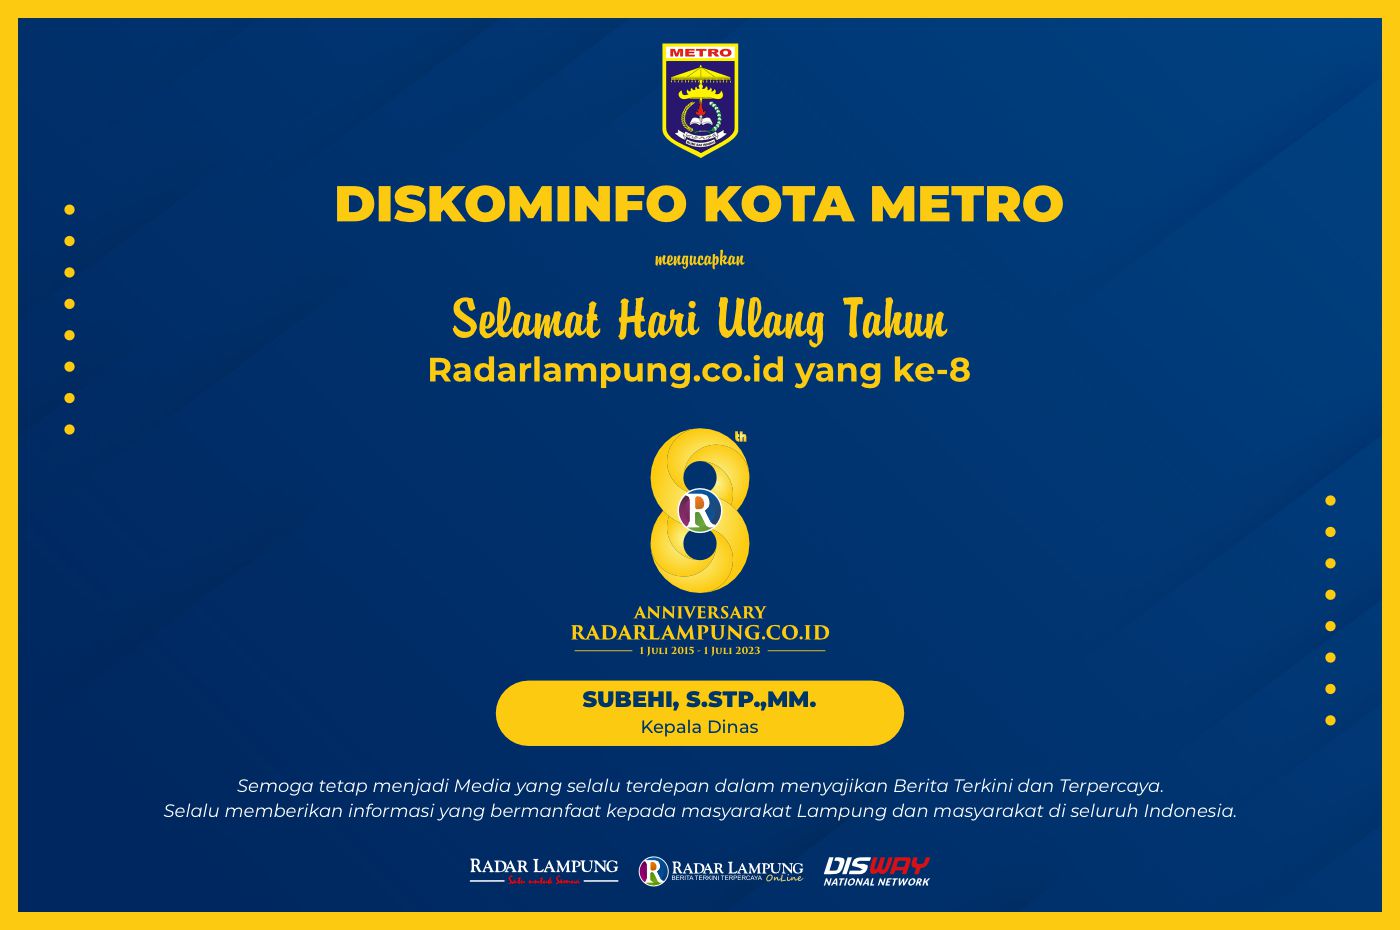 Diskominfo Kota Metro: Selamat HUT ke-8 Radar Lampung Online